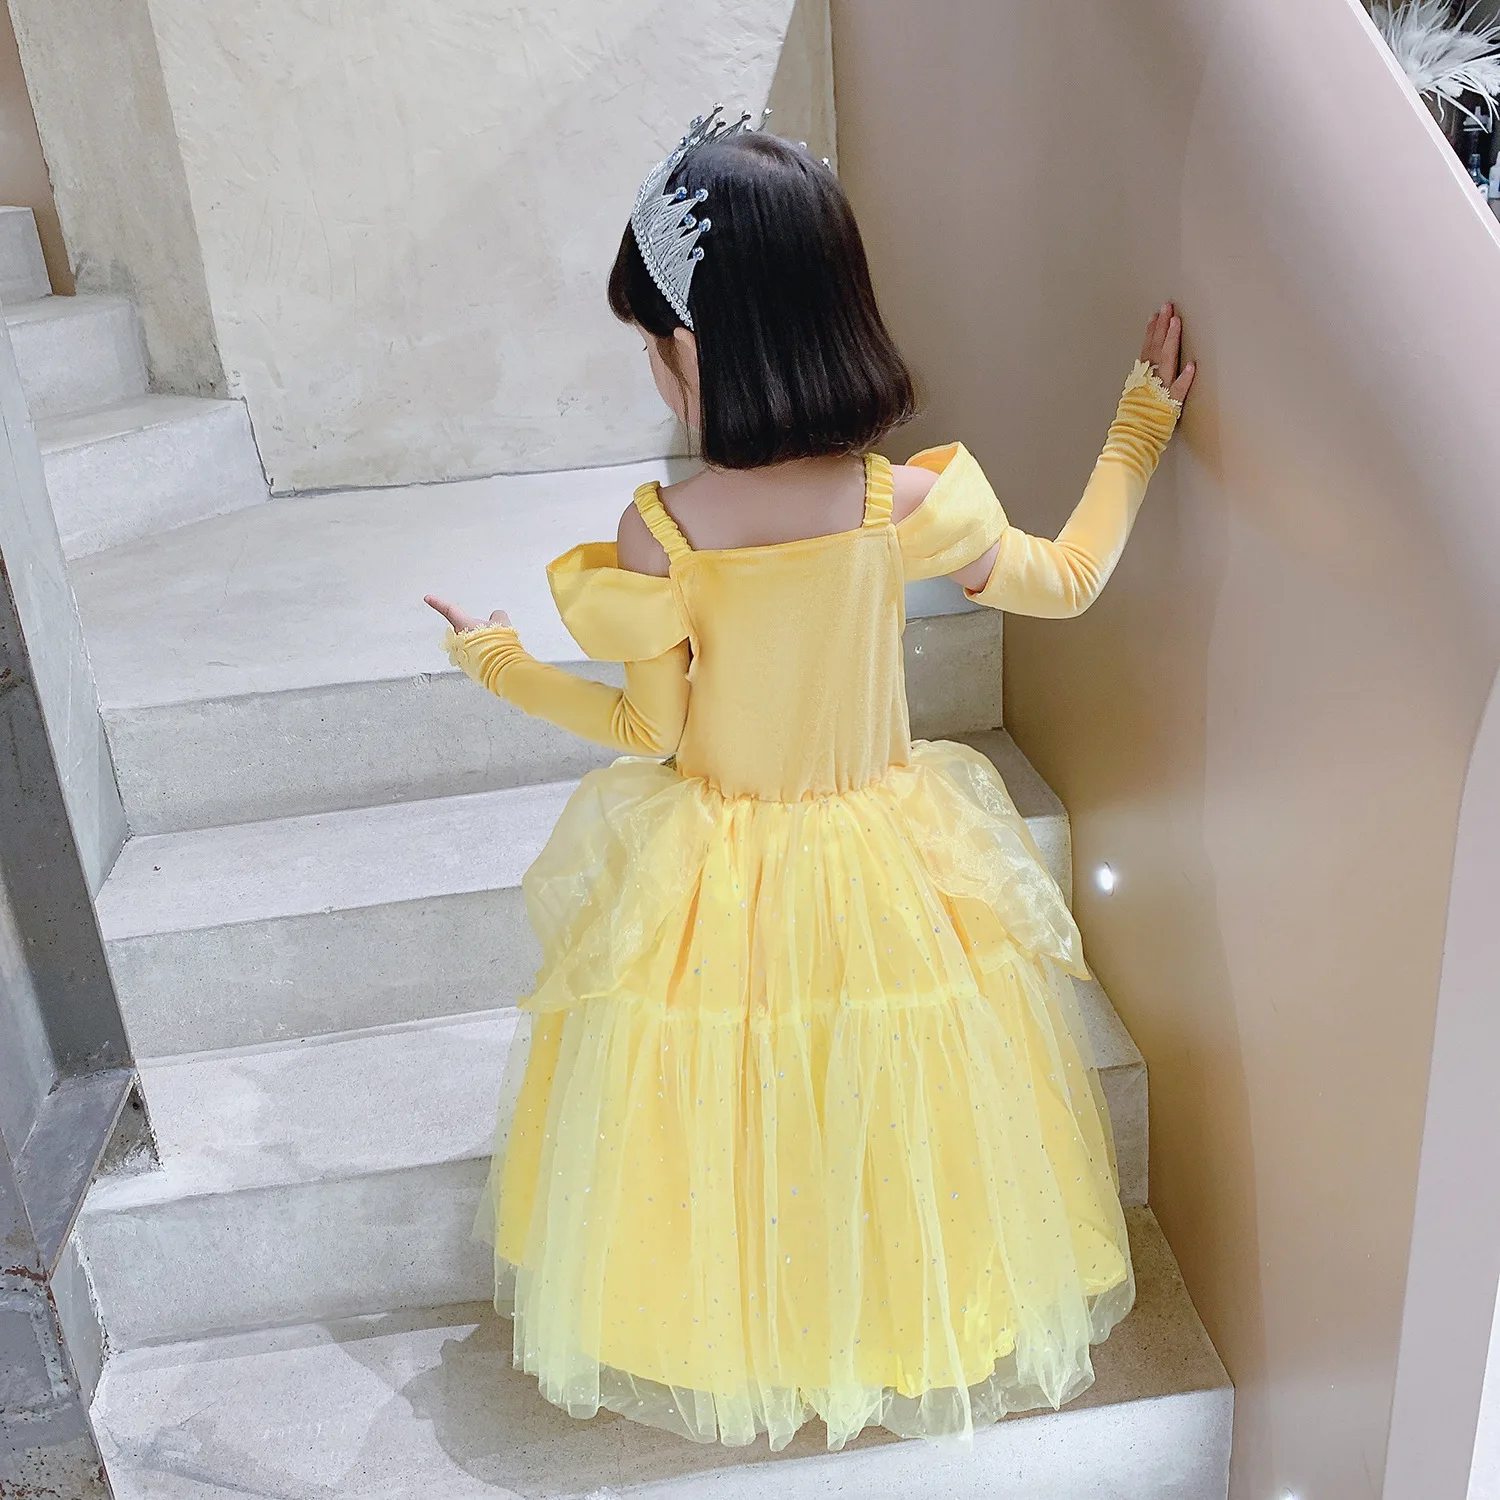 Acessórios de fantasia de princesa para meninas Acessórios de cosplay  Belle, Girls' Costumes (amarelo)